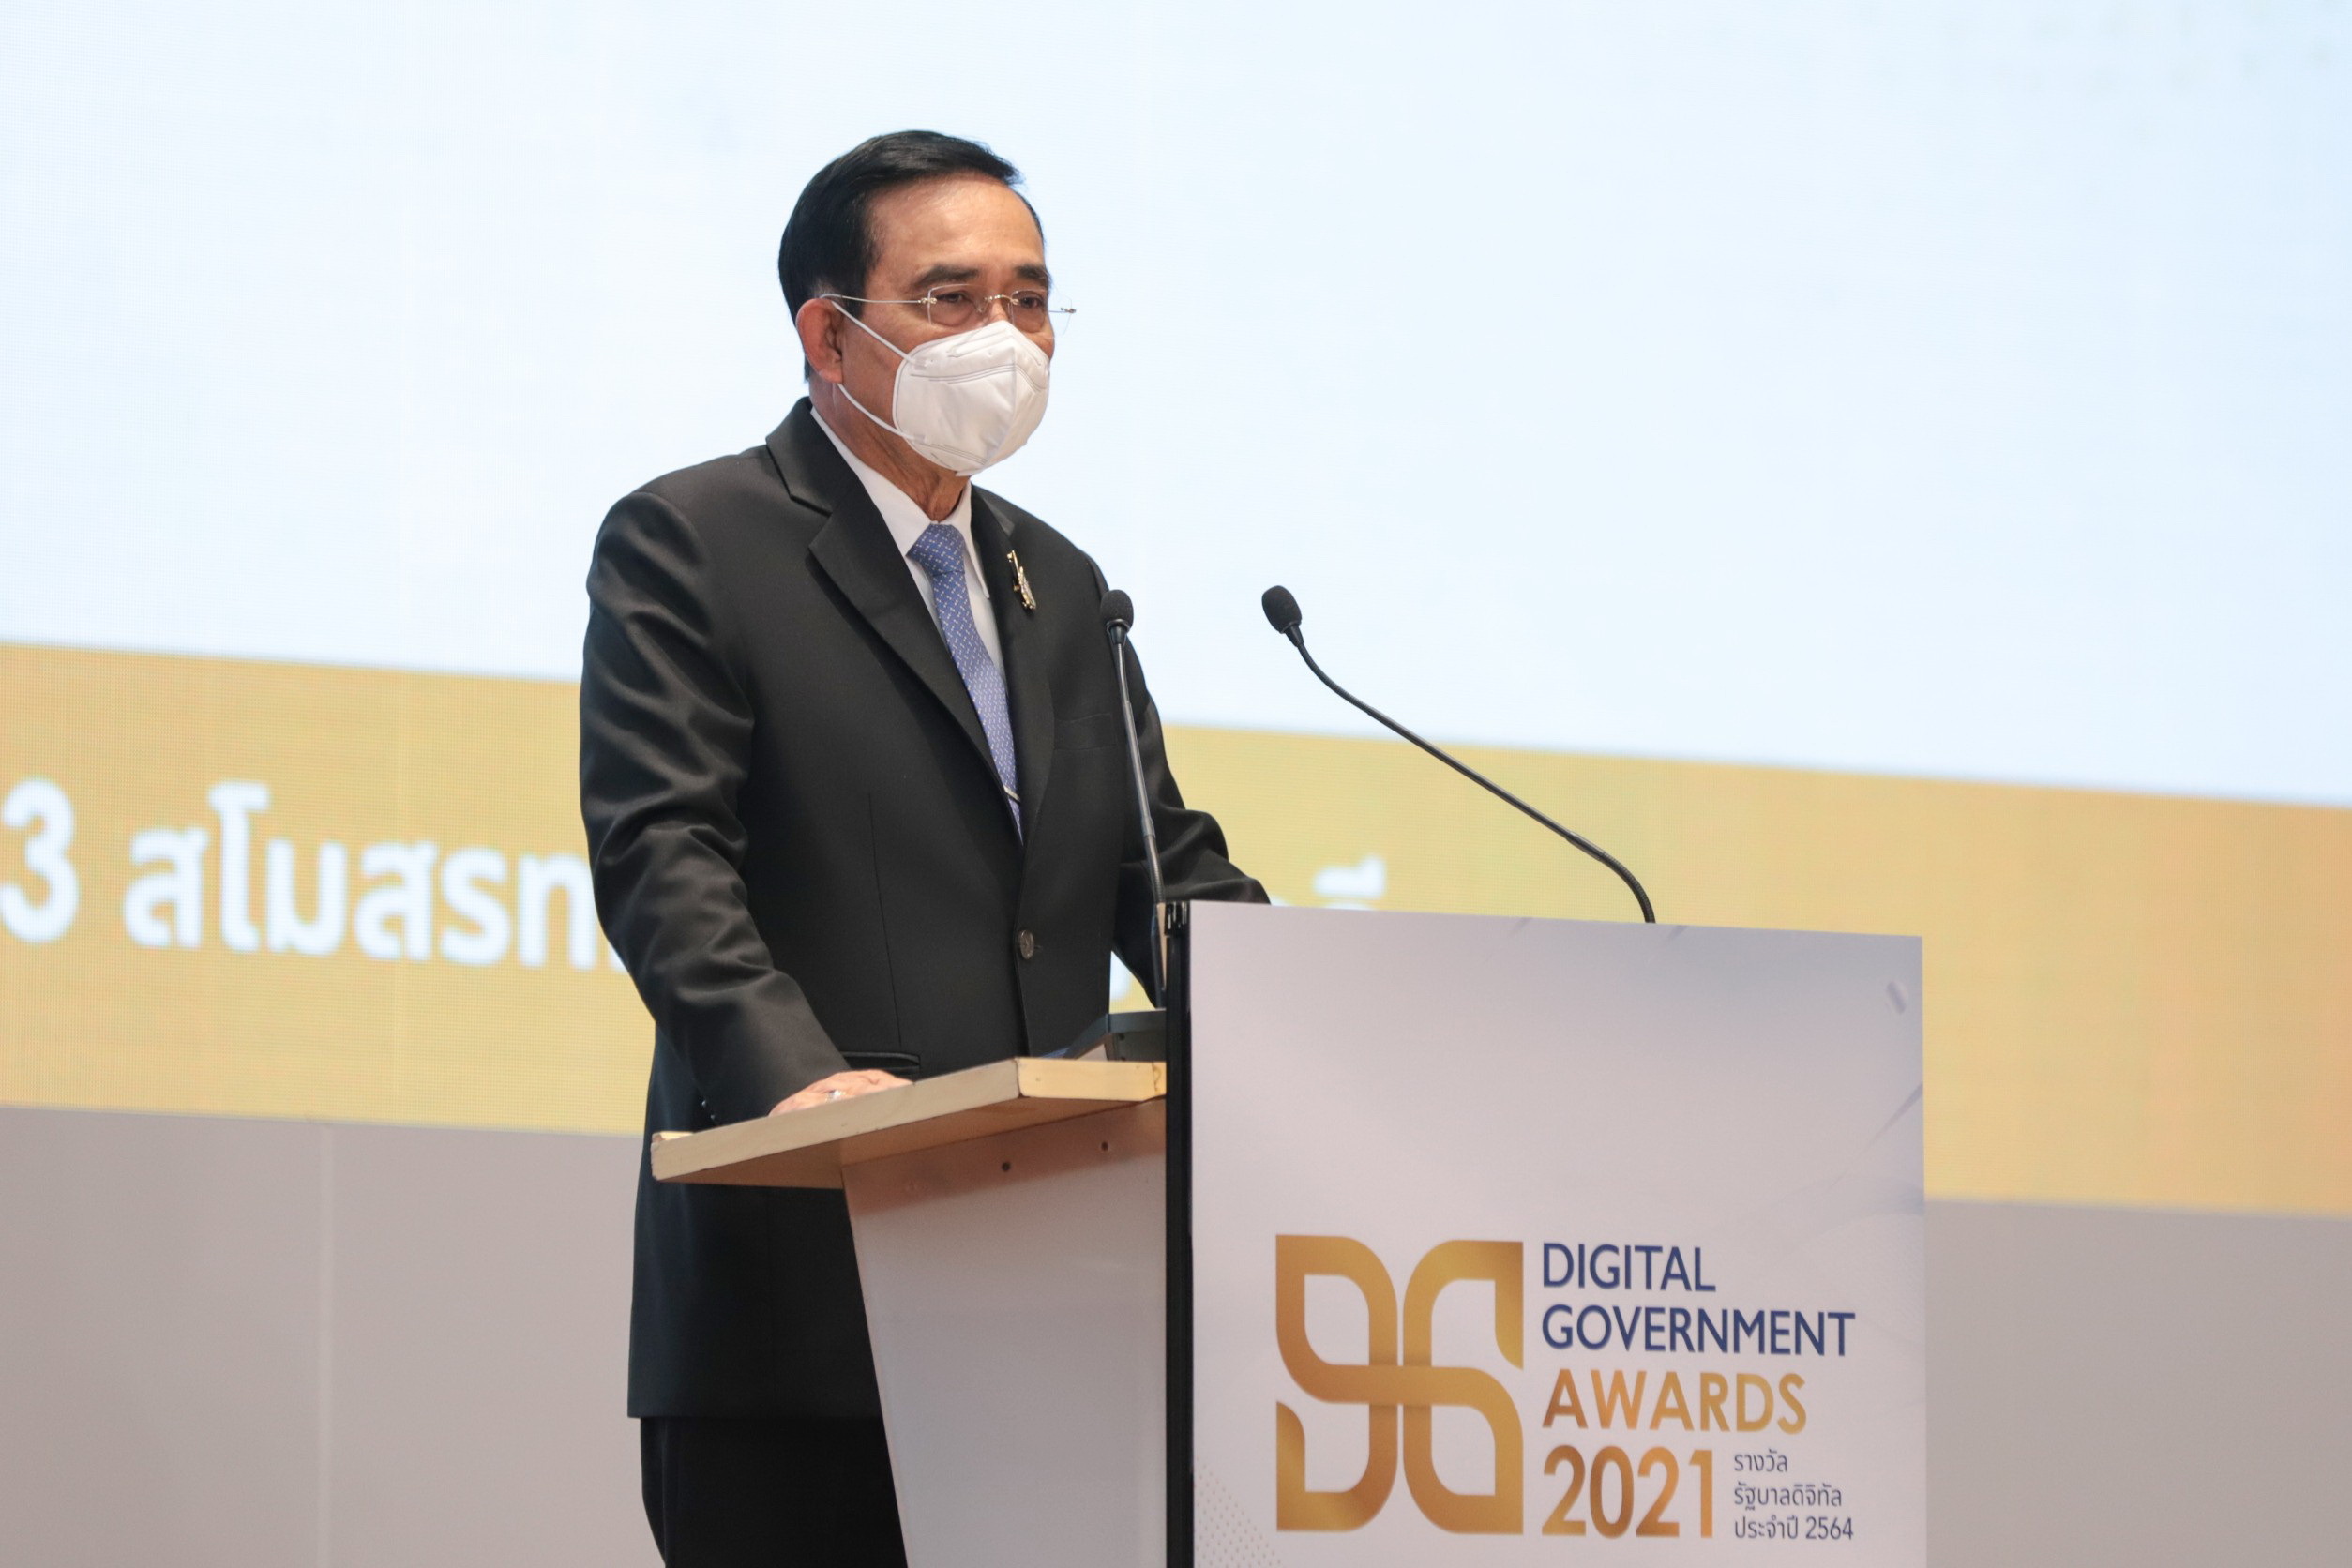 นายกรัฐมนตรีมอบรางวัลรัฐบาลดิจิทัลประจำปี 2564 “Digital Government Awards 2021” ย้ำ 3 แนวทางสำคัญมุ่งพัฒนารัฐบาลดิจิทัลด้าน ‘ข้อมูล แพลตฟอร์มกลาง พัฒนาบุคลากรภาครัฐ’ อำนวยความสะดวกประชาชนเข้าถึงบริการภาครัฐแบบครบวงจรในอนาคต